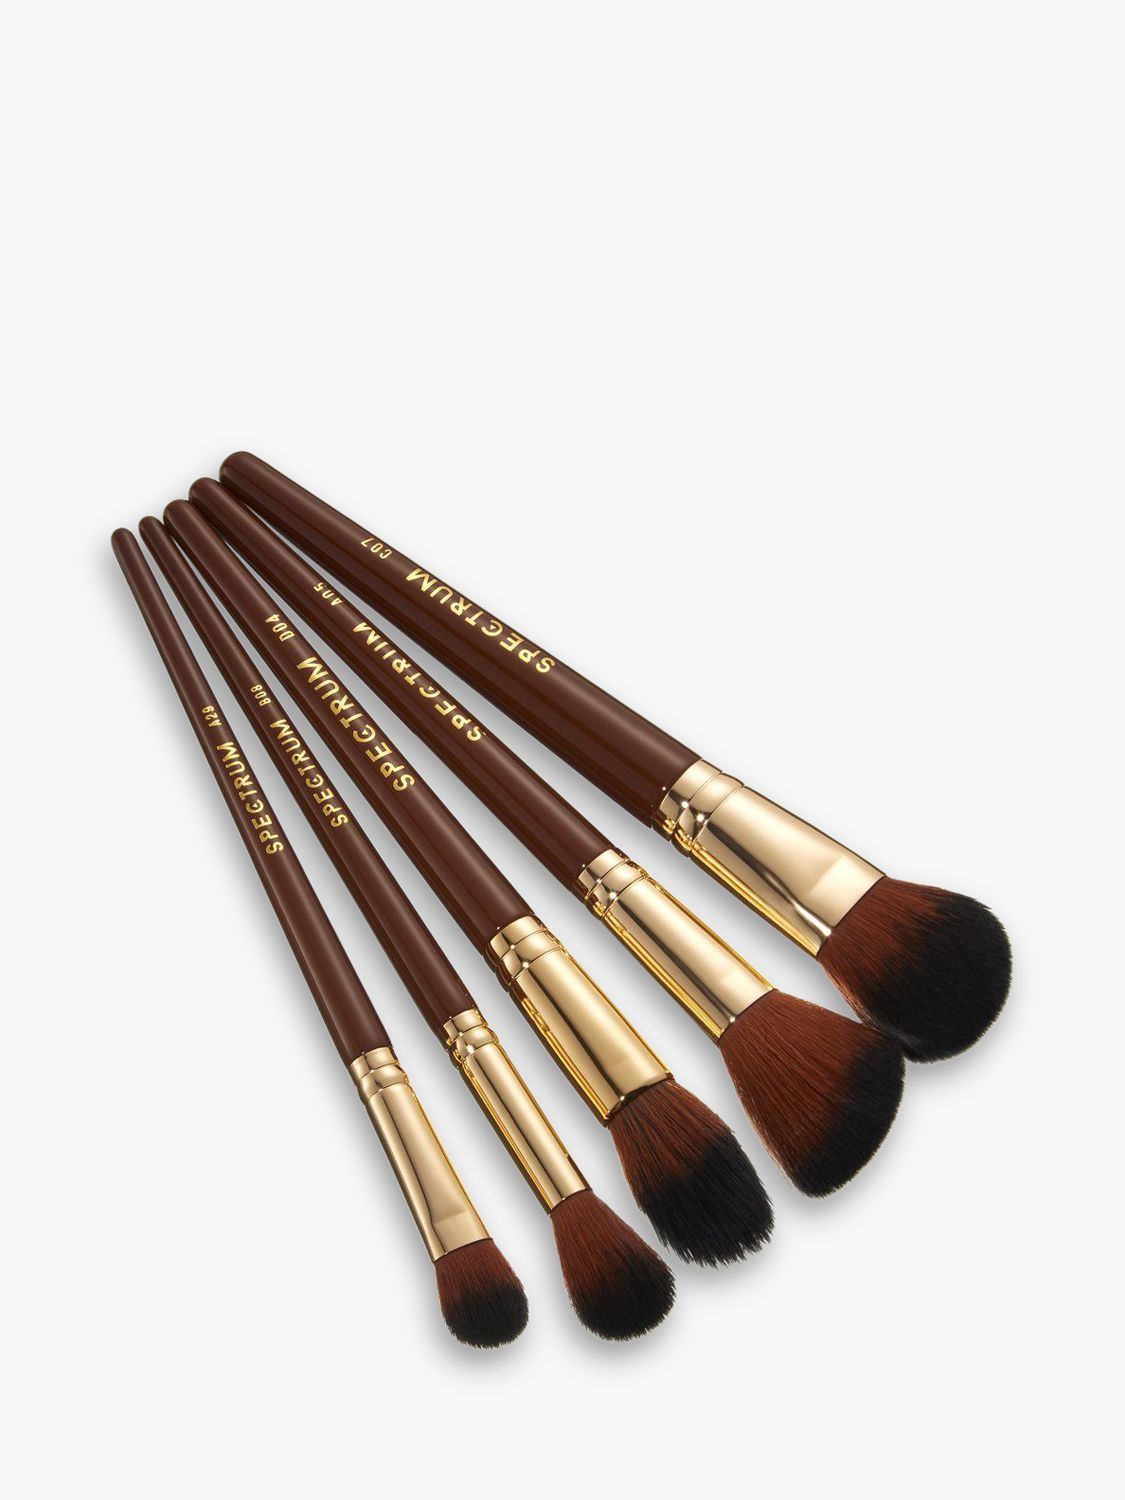 Chanel Les Indispensables De Chanel (brush/1pc*4) - Makeup Brush